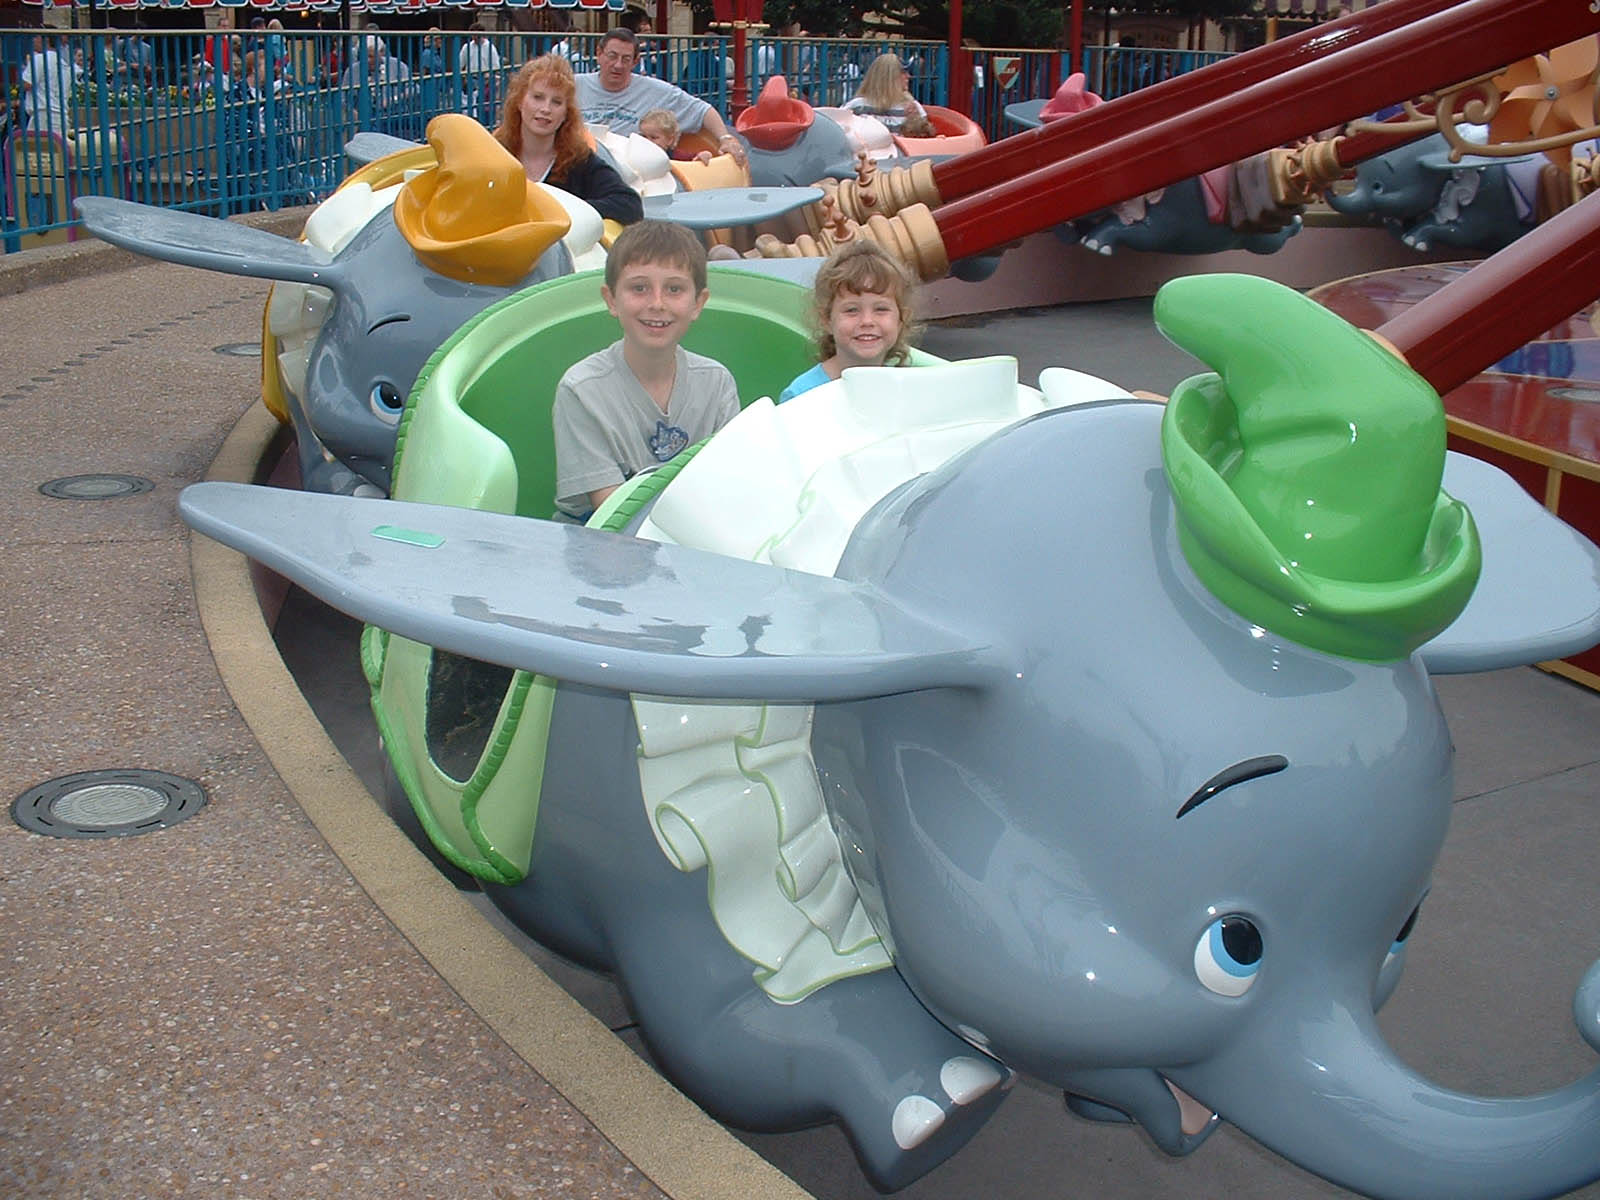 Dumbo flys the family